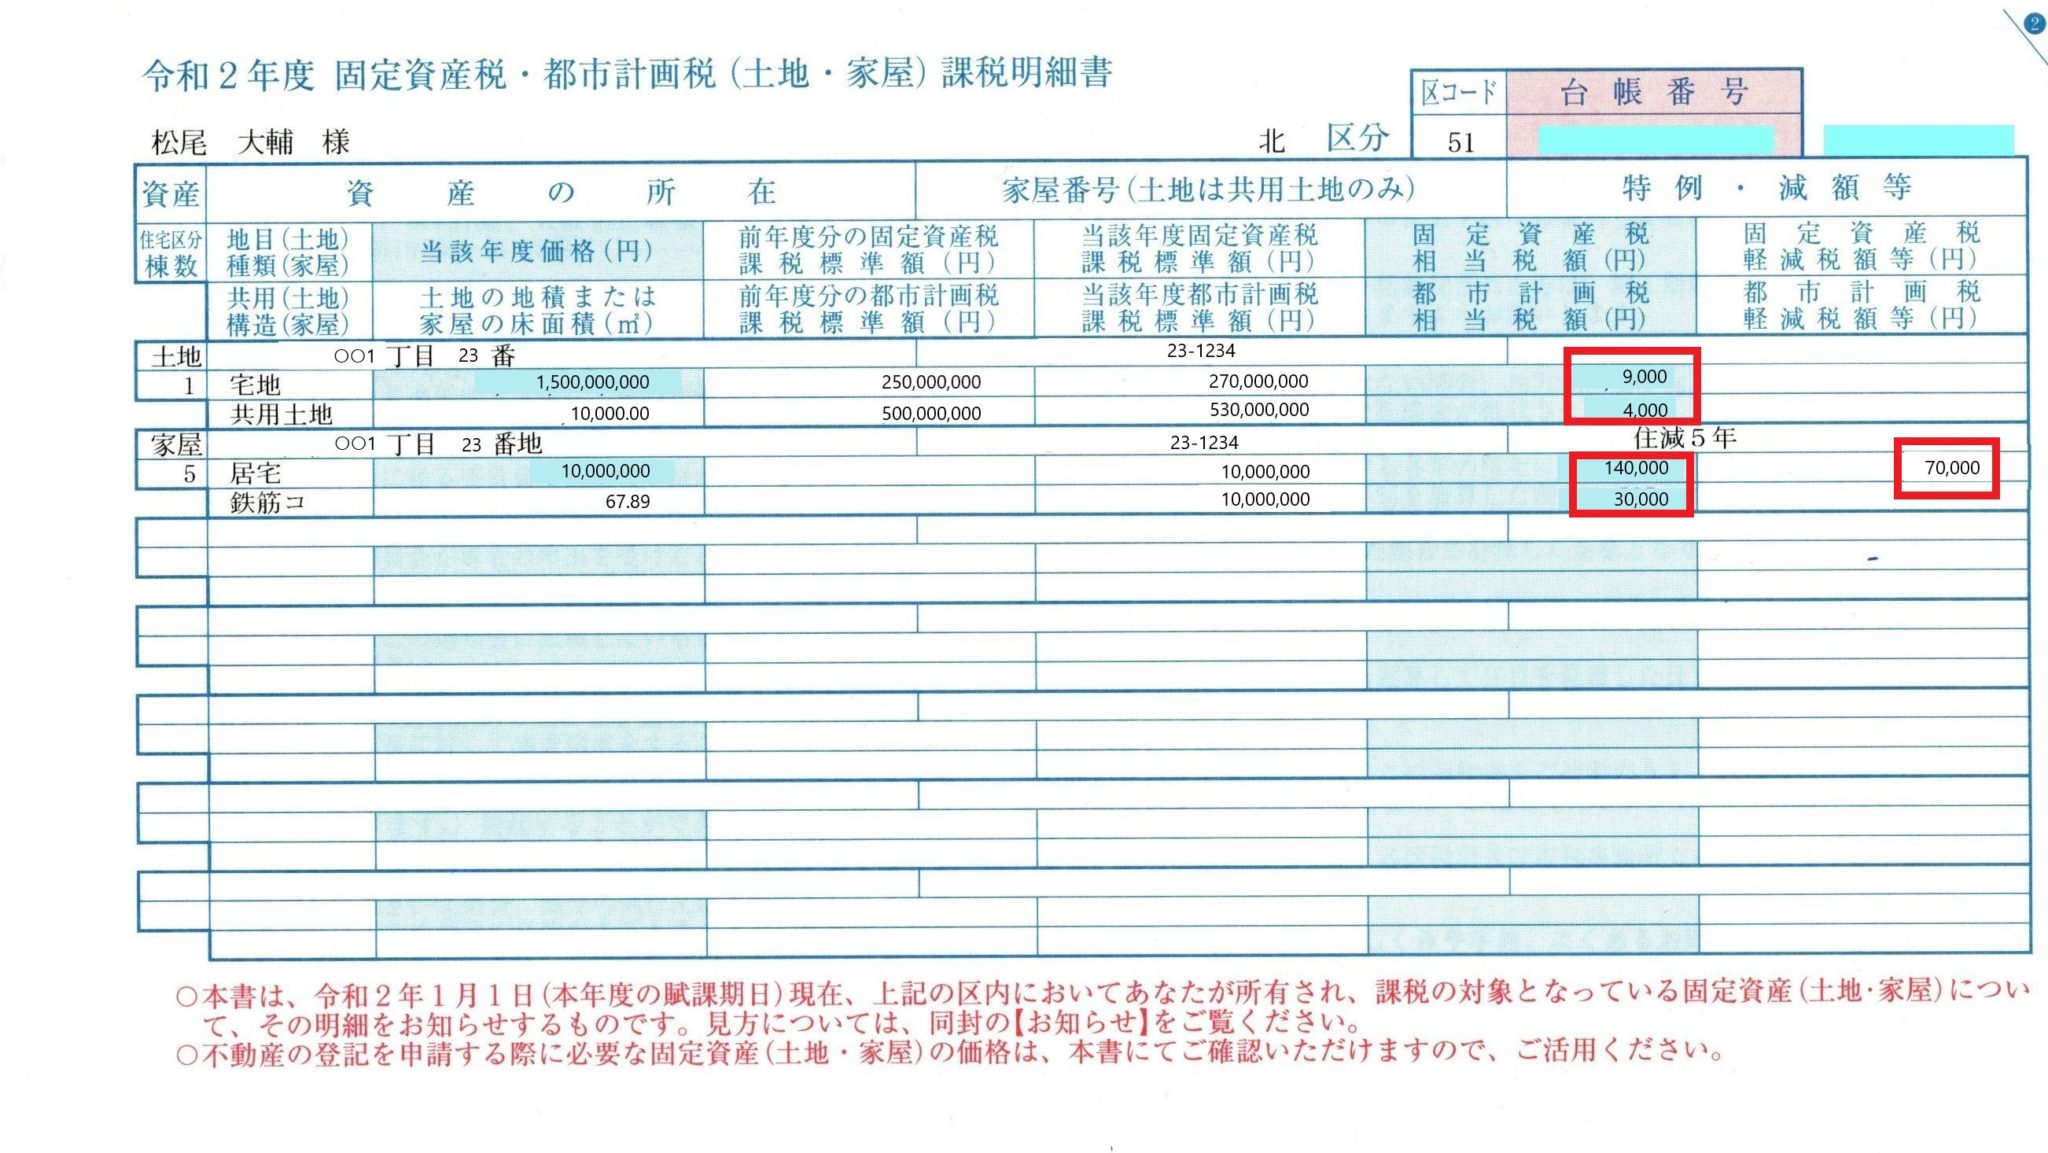 固定資産税納税通知書0001 コピー (3) 松尾大輔税理士・行政書士事務所